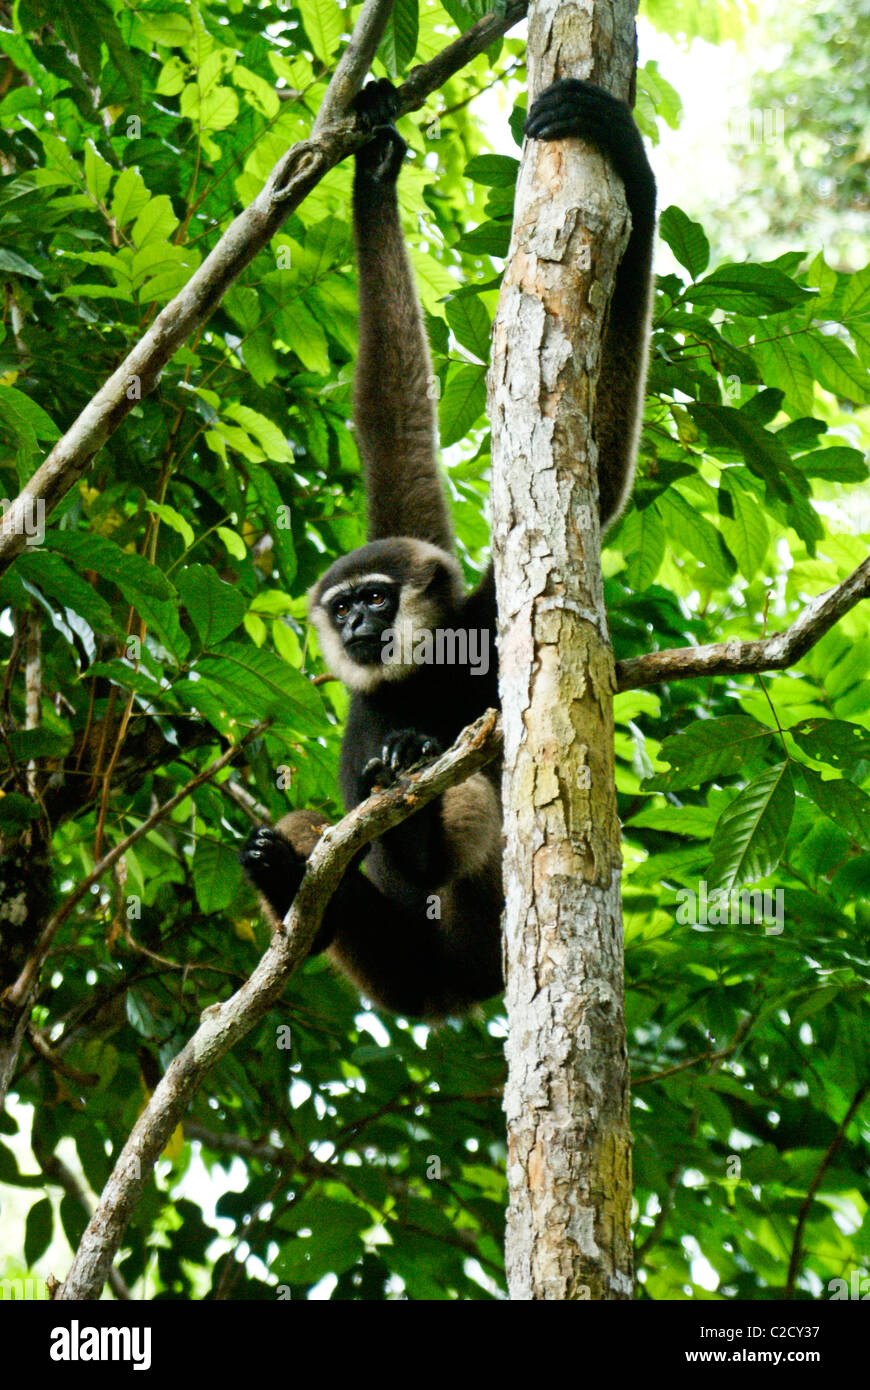 Agile Gibbon (männlich) hängen im Baum, Borneo, Indonesien Stockfoto